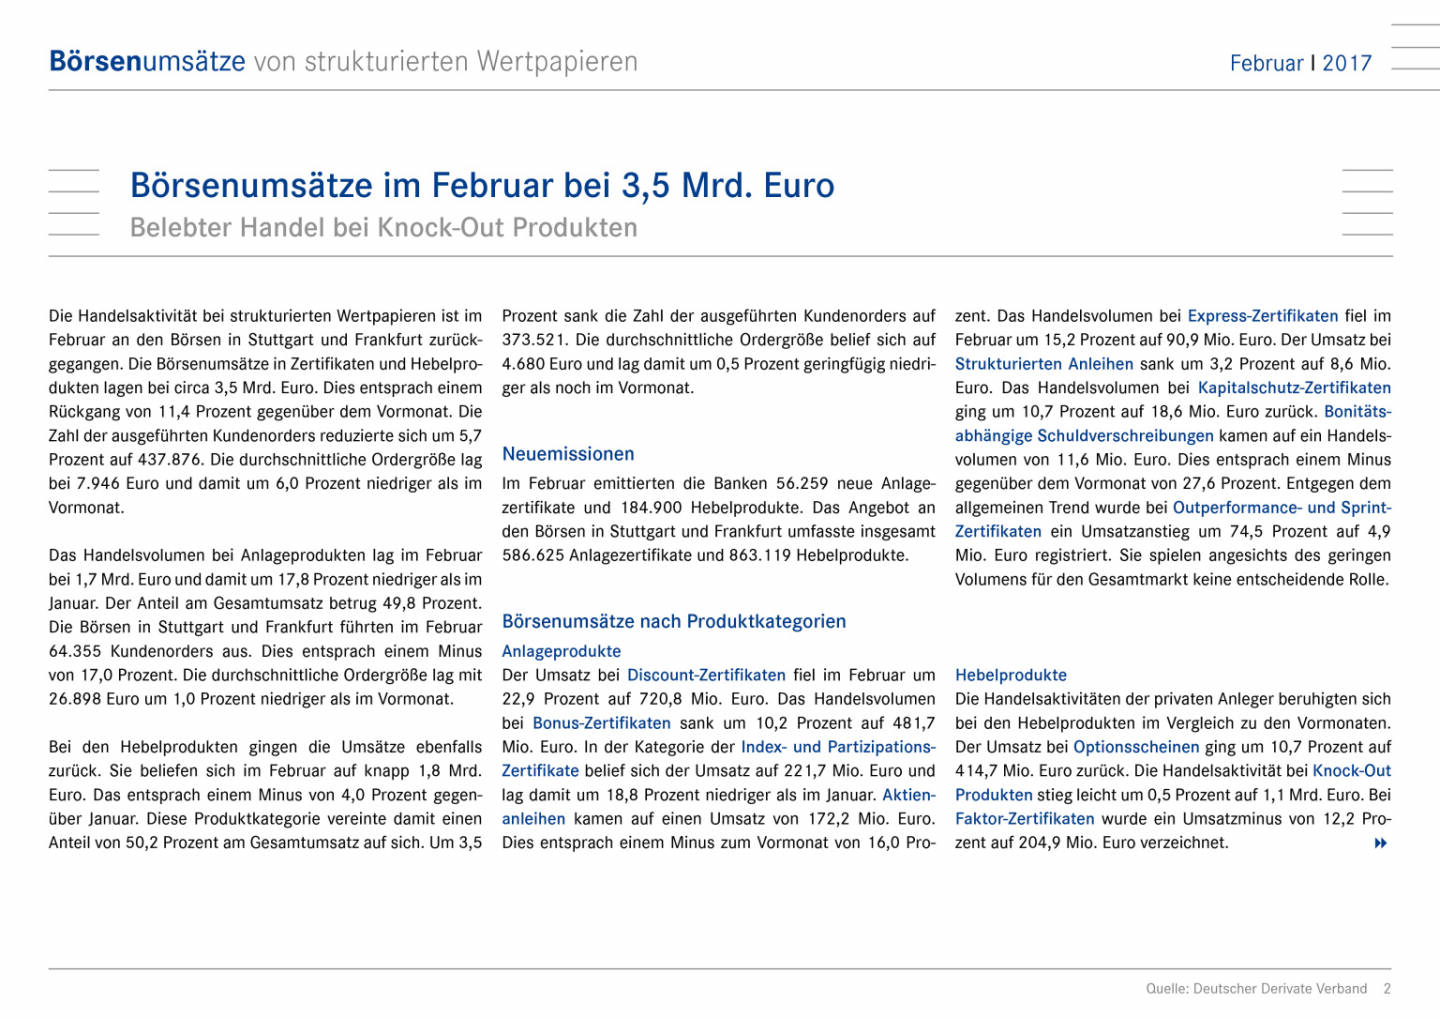 Deutsche Börsenumsätze von strukturierten Wertpapieren im Februar bei 3,5 Mrd. Euro, Seite 2/9, komplettes Dokument unter http://boerse-social.com/static/uploads/file_2154_deutsche_borsenumsatze_von_strukturierten_wertpapieren_im_februar_bei_35_mrd_euro.pdf